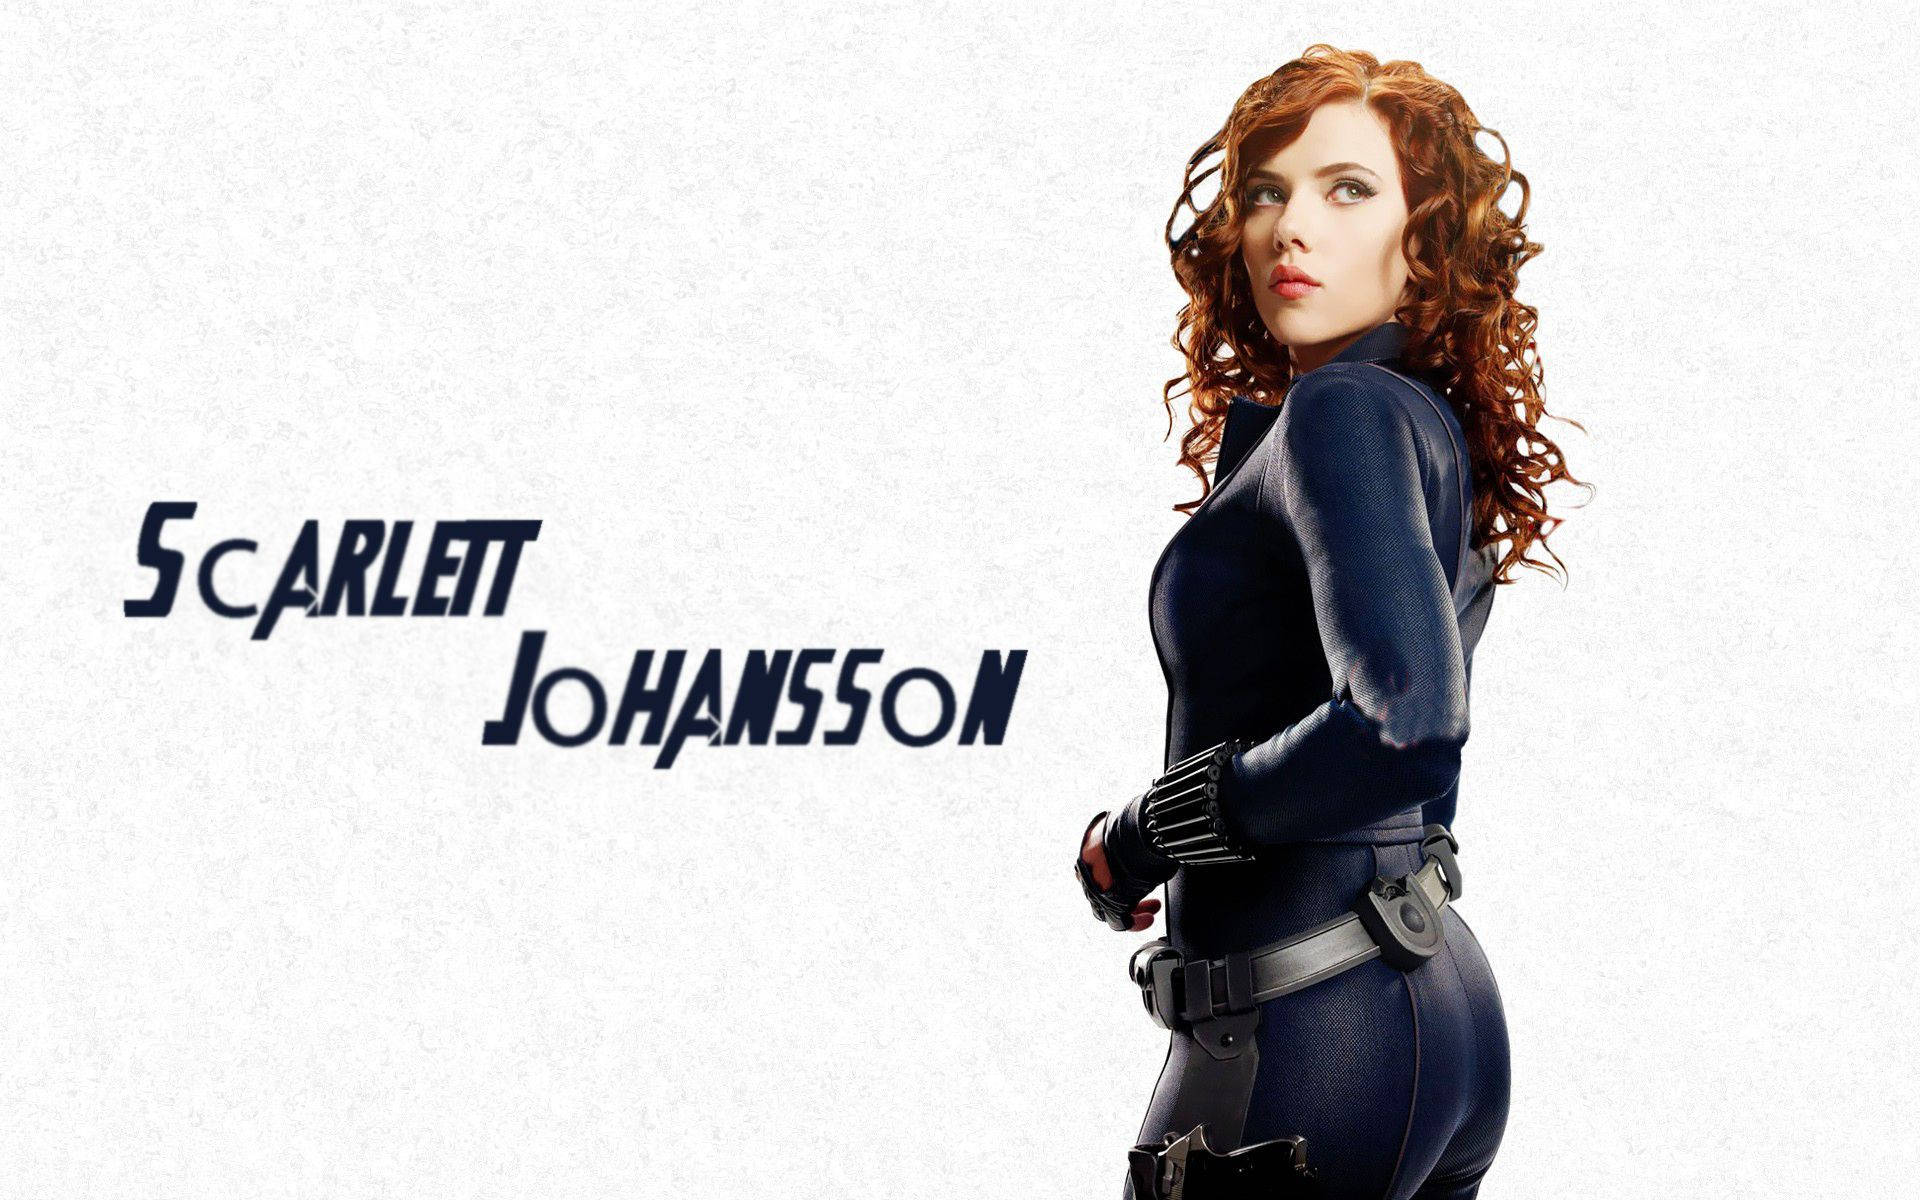 Scarlett Johansson as Natasha Romanoff in Marvel's The Avengers Wallpaper